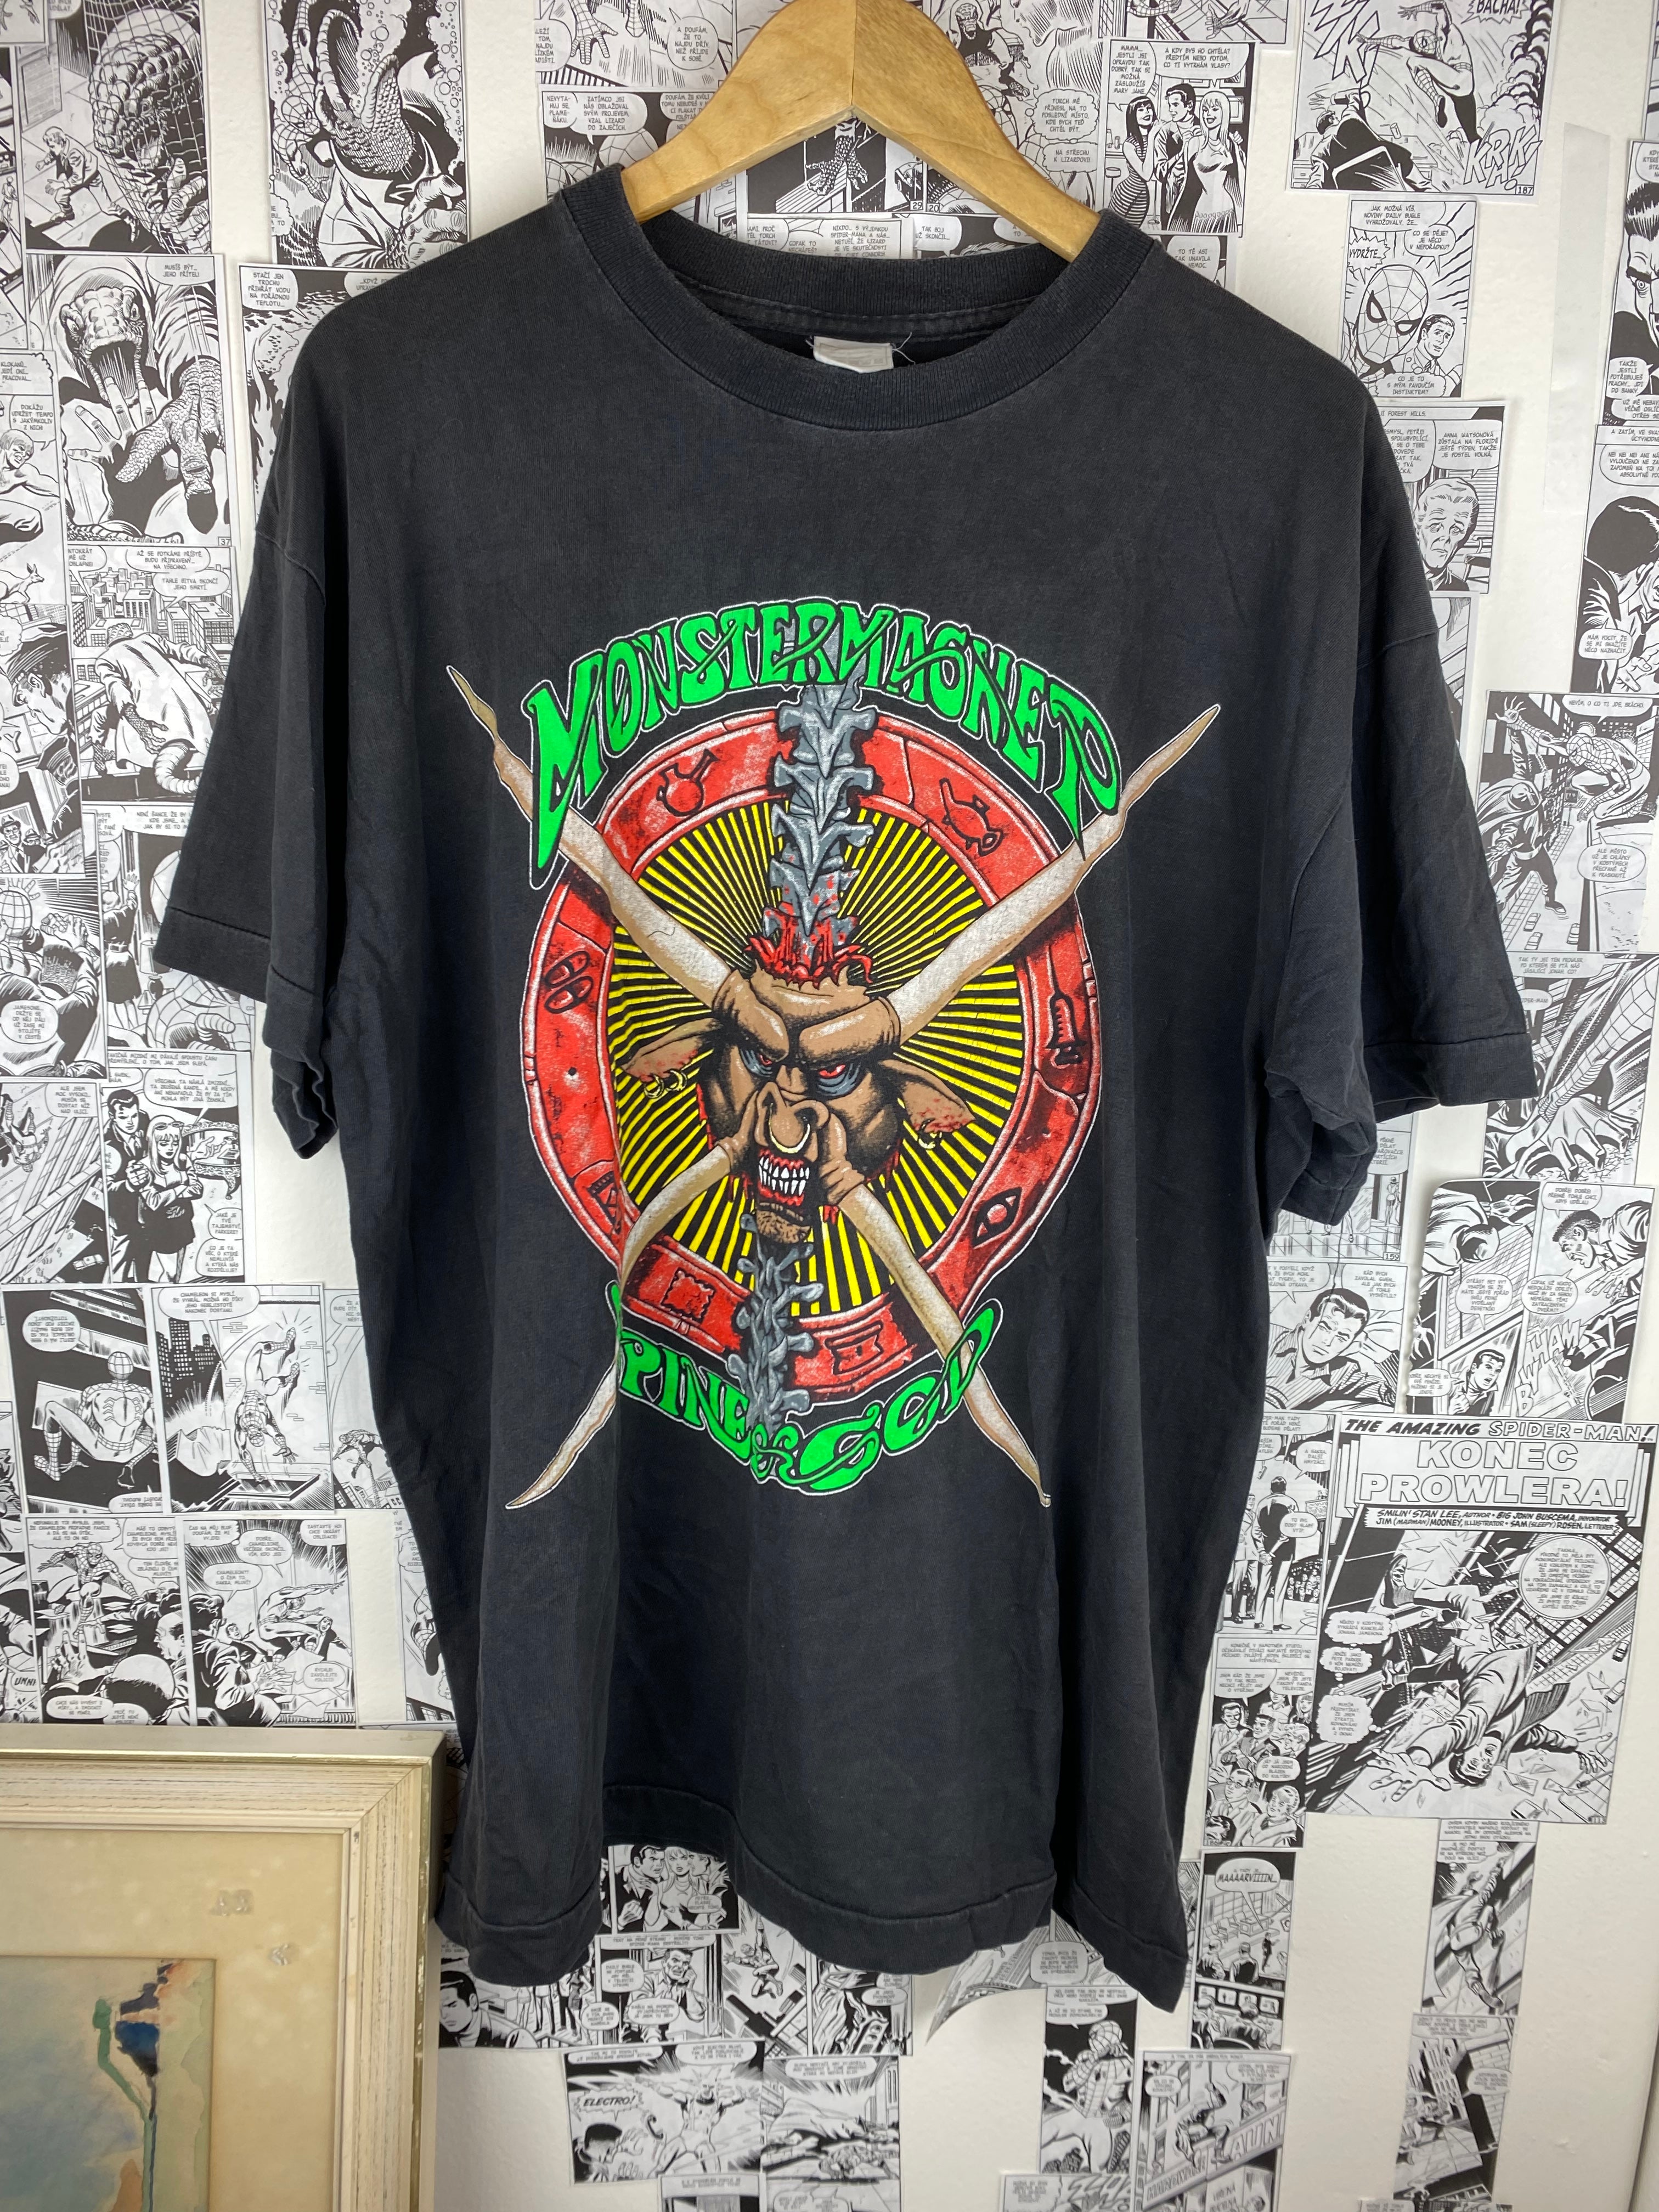 Vintage MonsterMagnet “Spine of God” 90s t-shirt - size XL